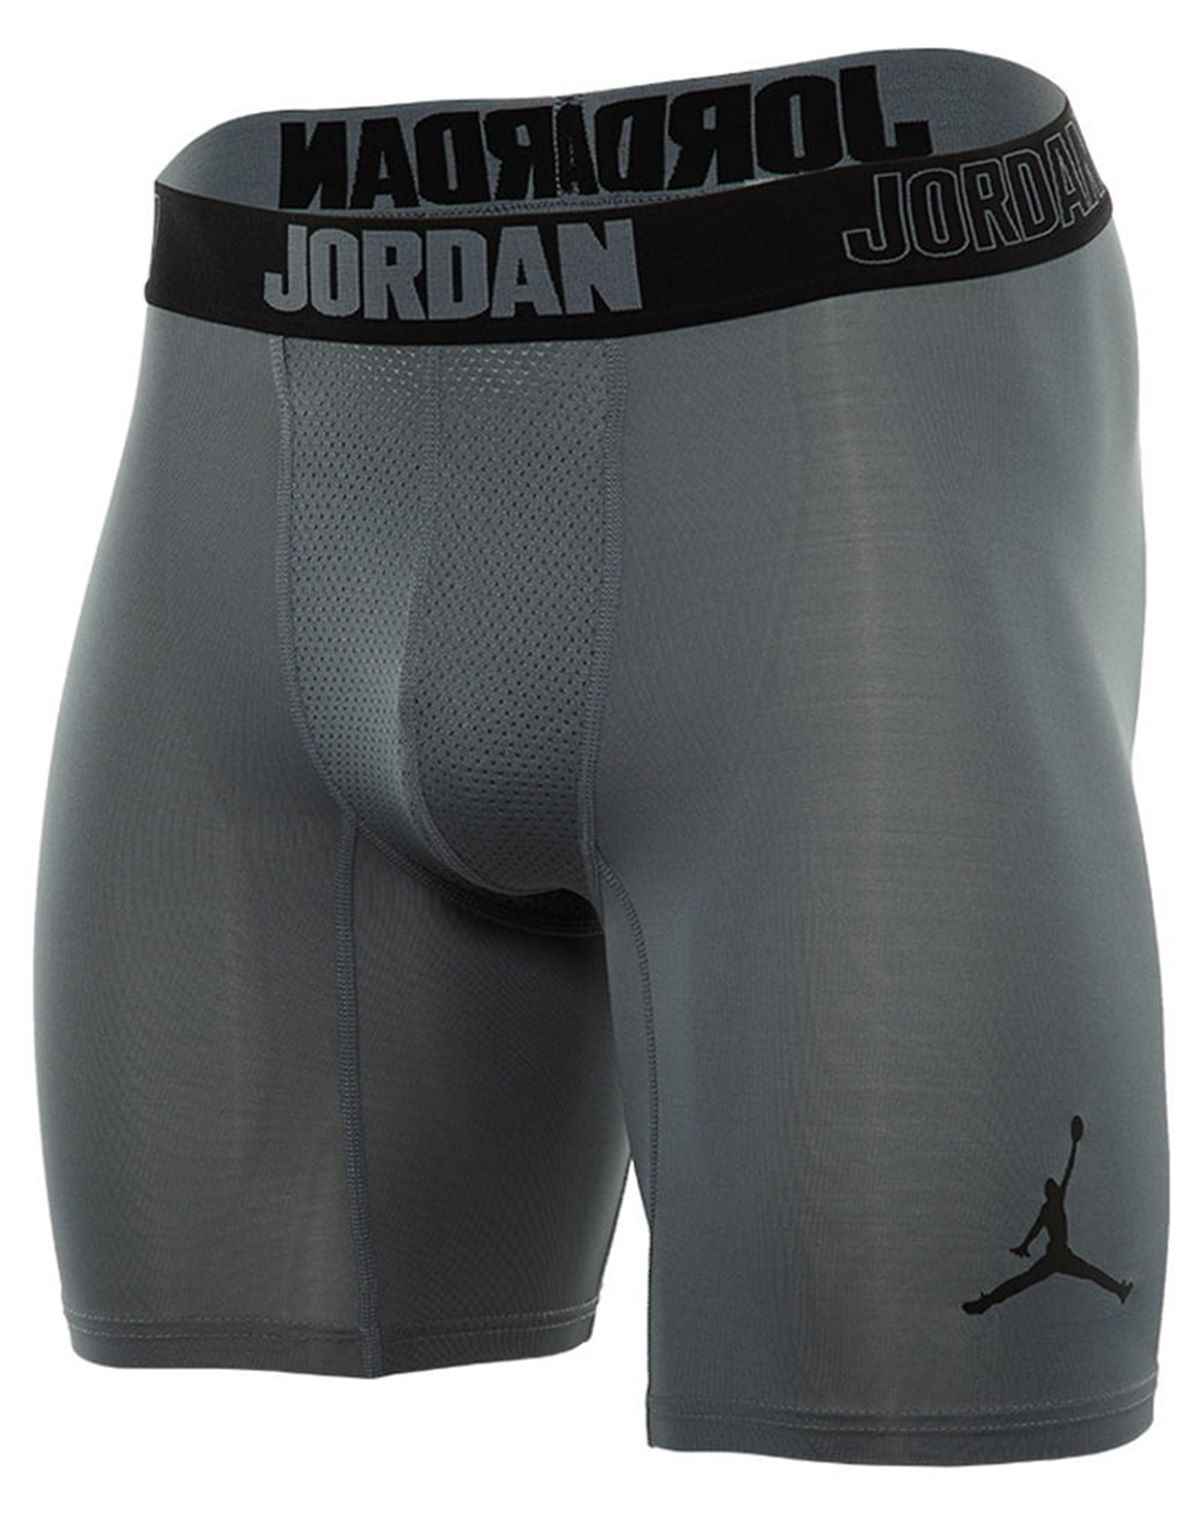 8 Best Jordan Compression Shorts For 2023